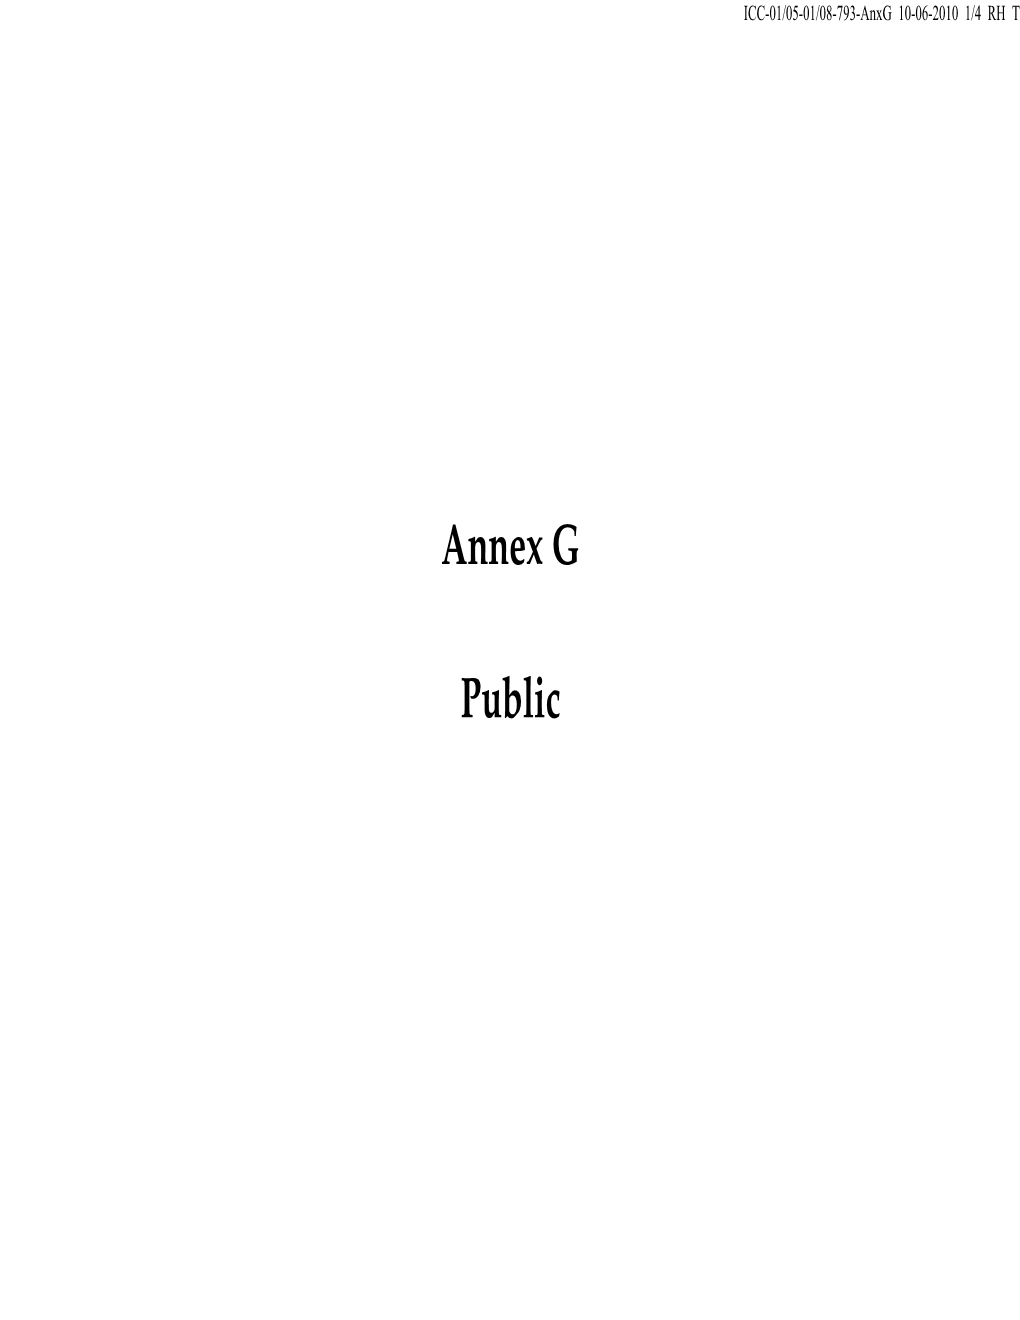 Annex G Public